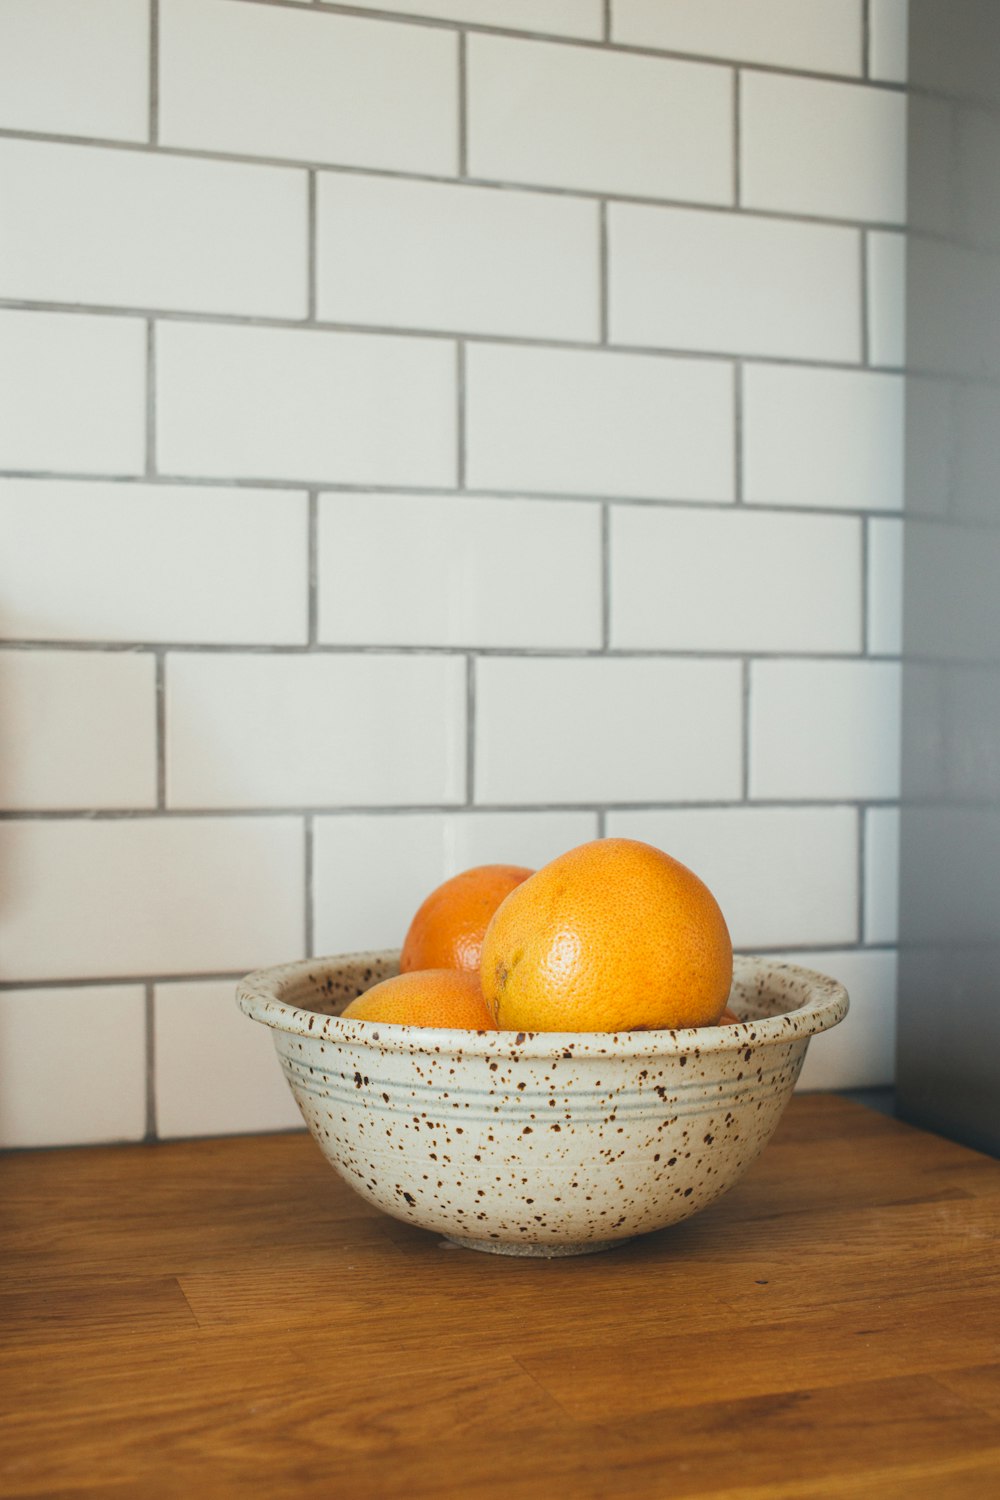 Drei orangefarbene Früchte in weißen Keramikschalen auf dem Tisch